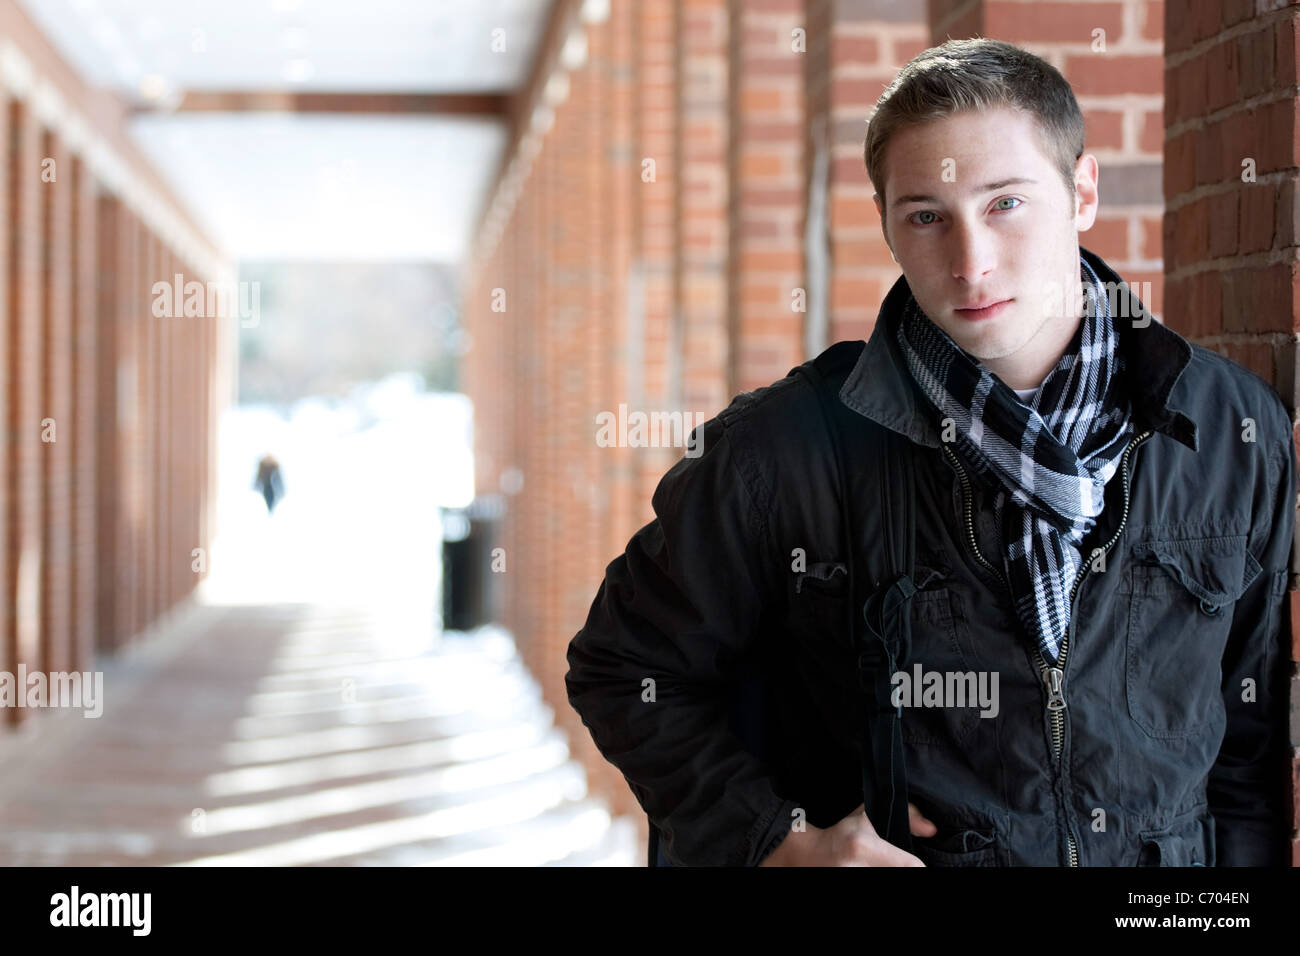 Un portrait d'un jeune homme debout dans un couloir en plein air avec son sac à dos. Banque D'Images